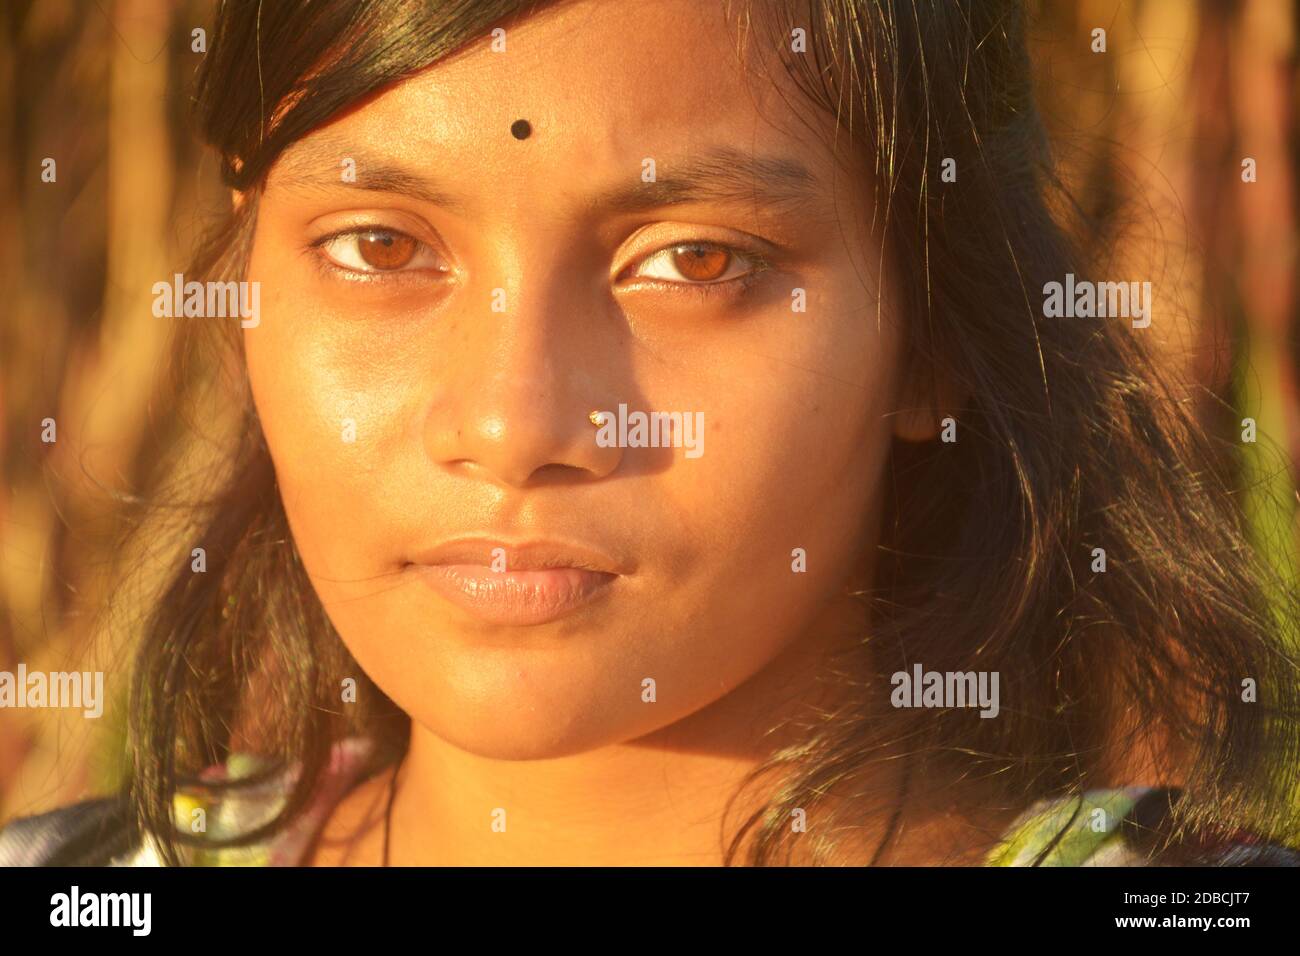 Nahaufnahme eines schönen Mädchens mit einer goldenen Nasennadel und schwarzer Bindi auf ihrer Stirn, selektive Fokussierung Stockfoto